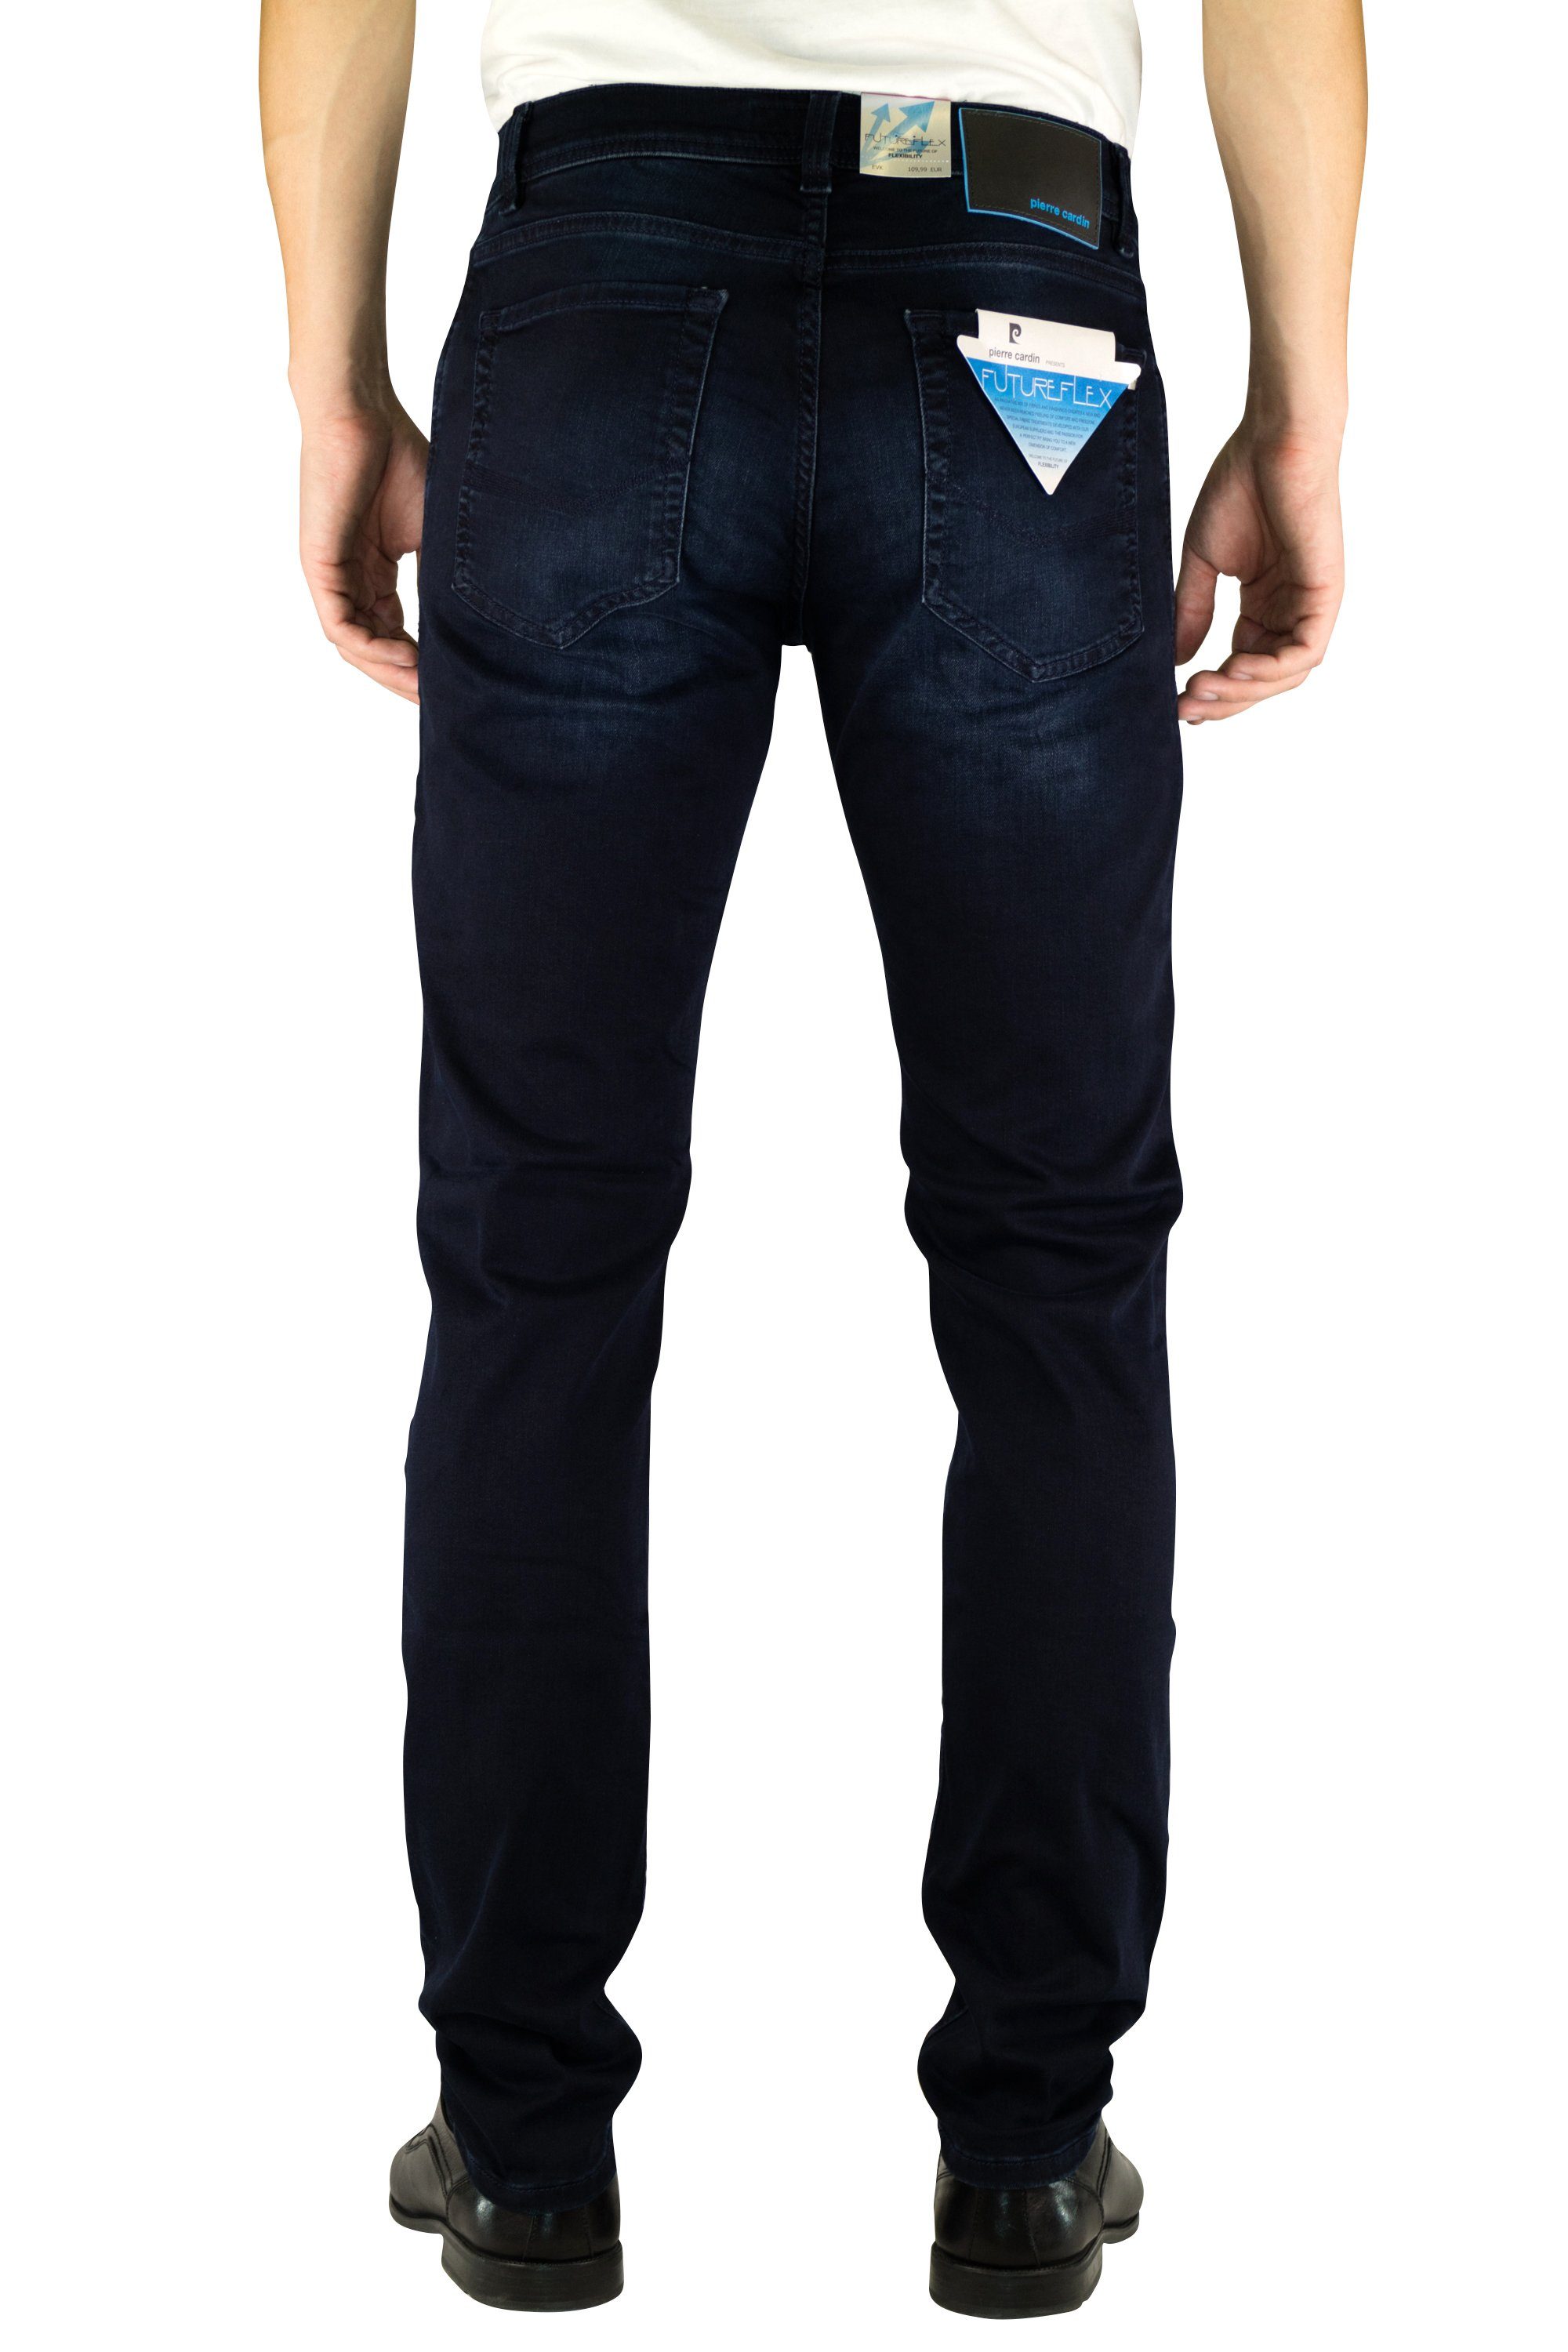 blue washed 5-Pocket-Jeans 3451 used vintage Cardin LYON Pierre PIERRE dark CARDIN sun FUTUREFLEX